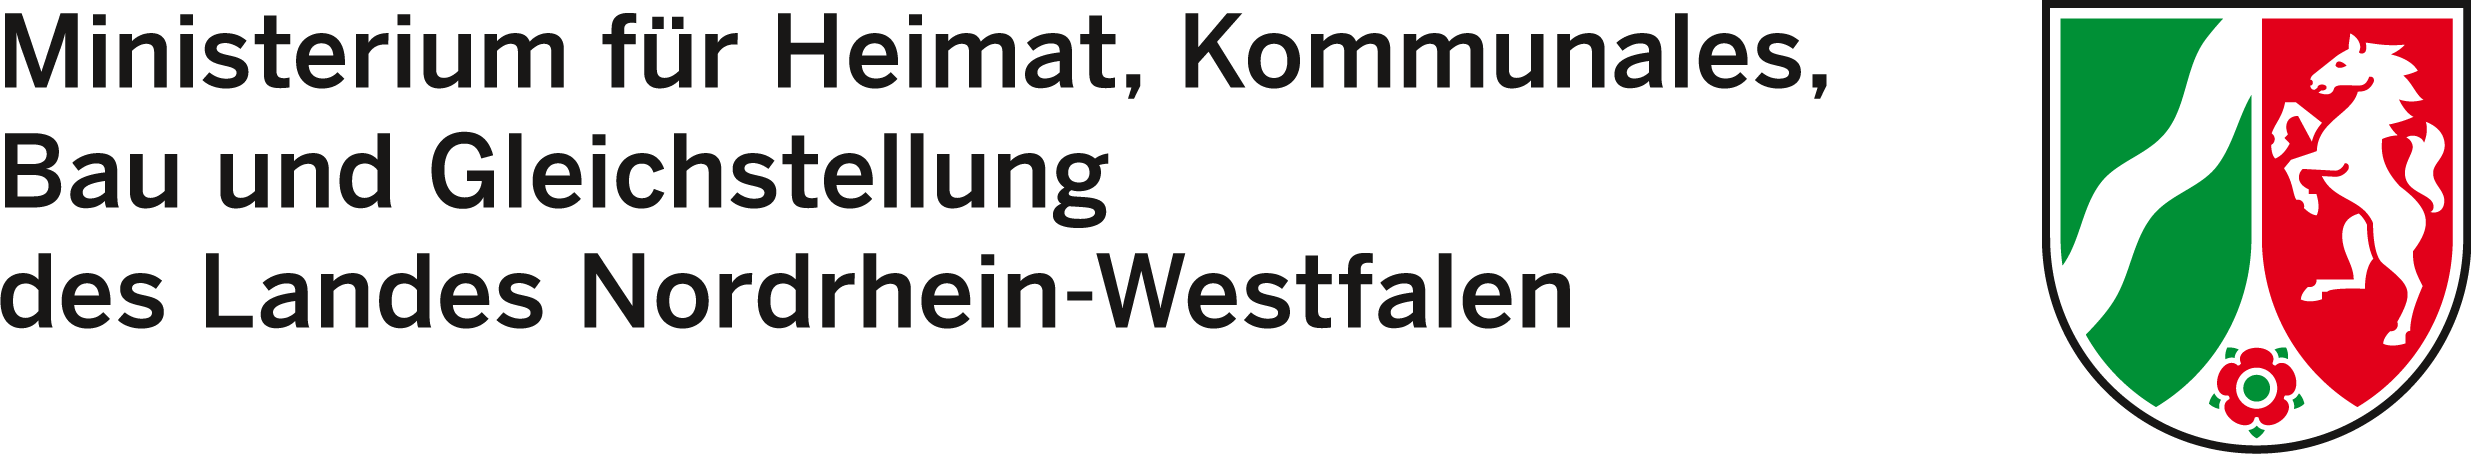 mkw logo